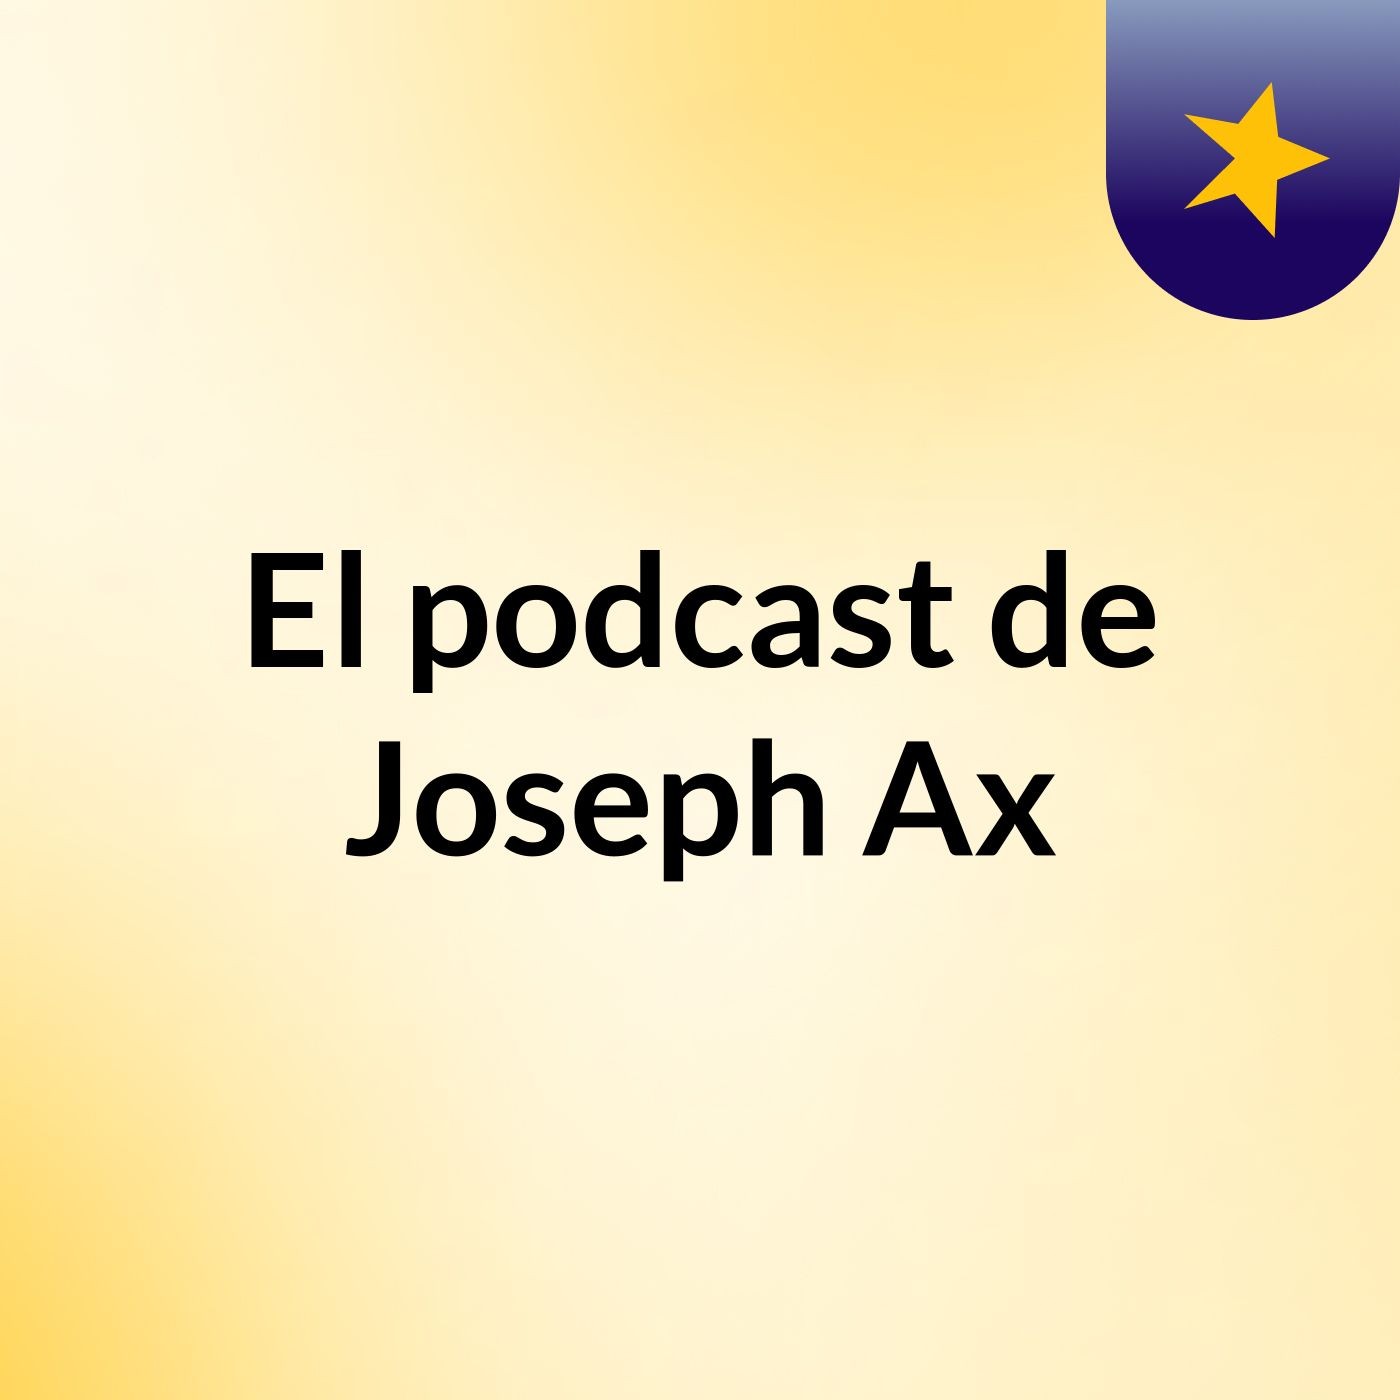 El podcast de Joseph Ax